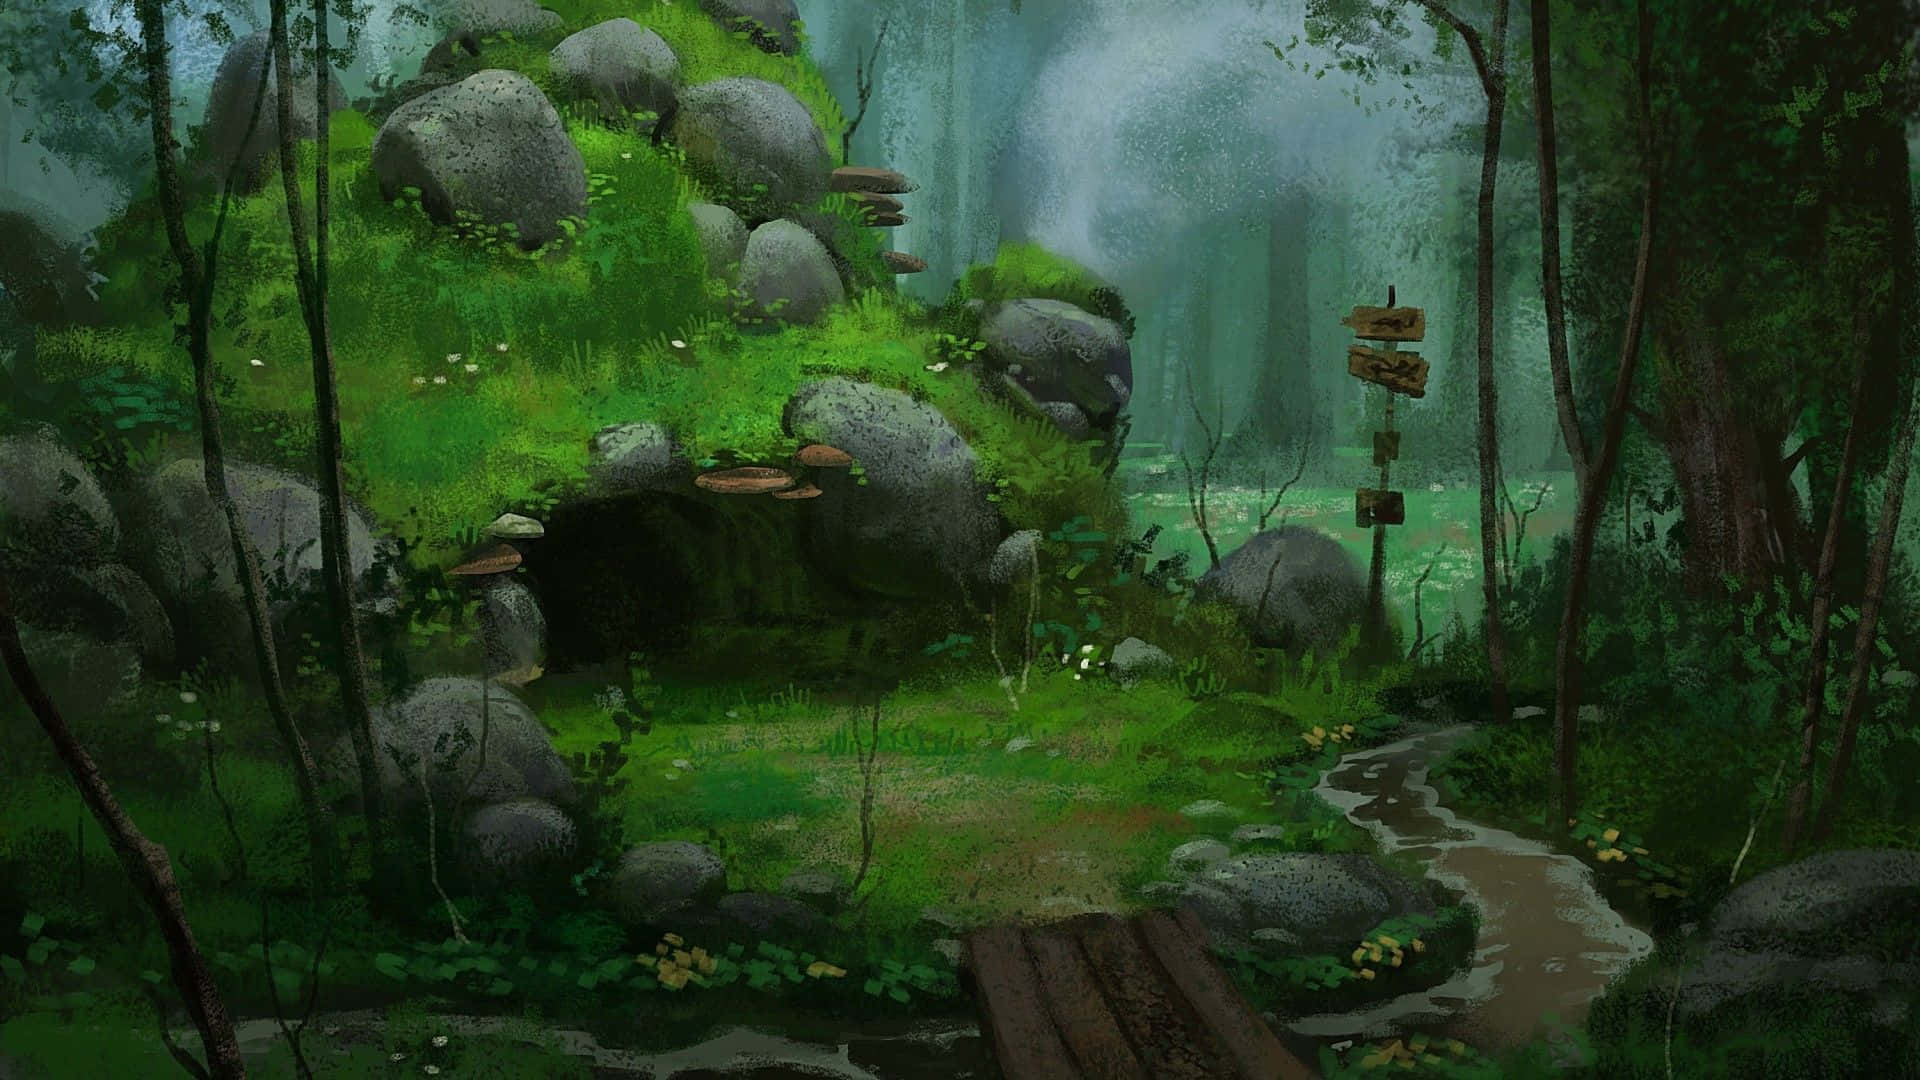 Tauchensie Ein In Die Schönheit Dieses An Anime Inspirierten Waldes. Wallpaper